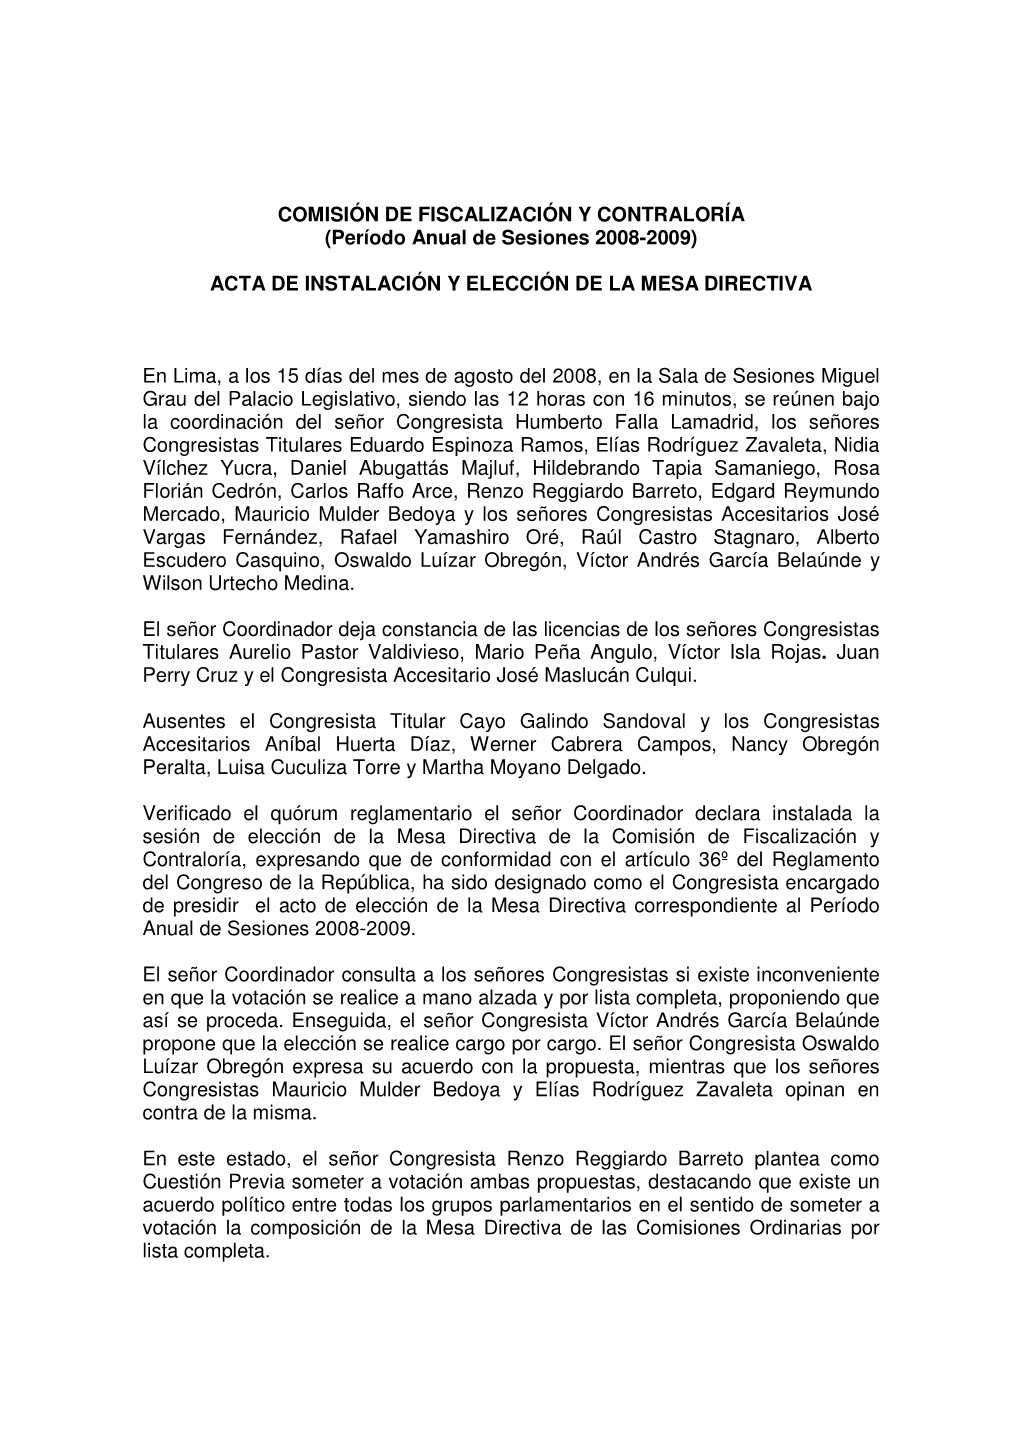 COMISIÓN DE FISCALIZACIÓN Y CONTRALORÍA (Período Anual De Sesiones 2008-2009)